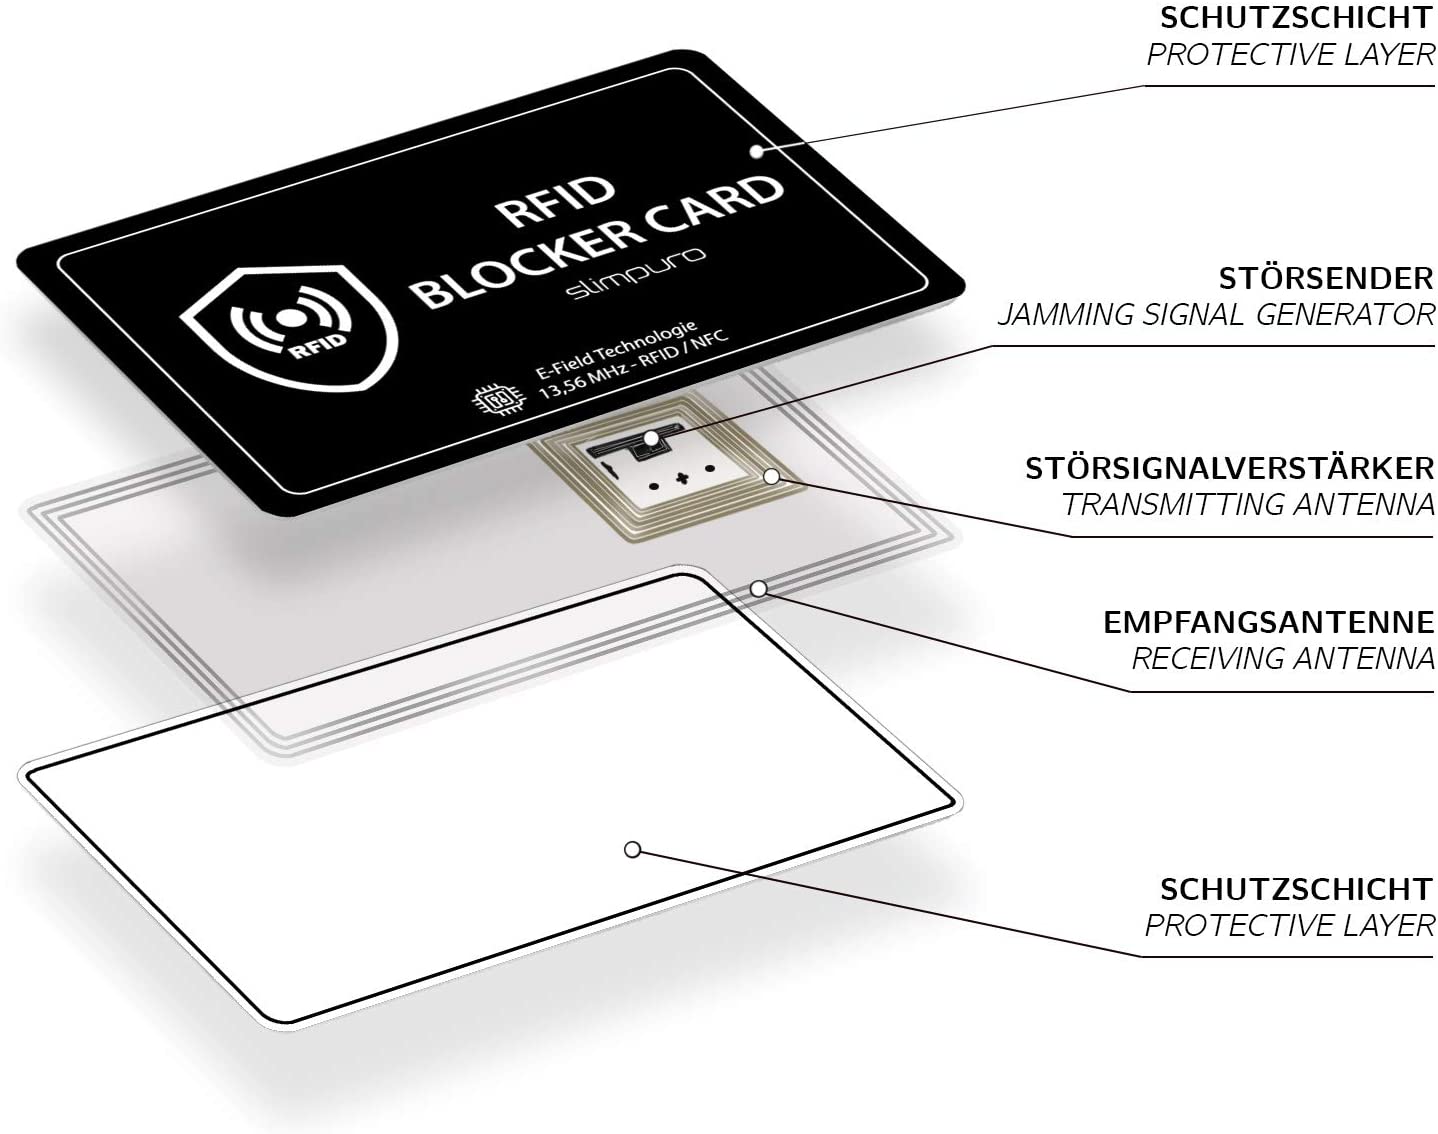 RFID Blocker Karte - DEKRA Getestet - Störsender Technologie - NFC Schutzkarte - Schutz vor Datendiebstahl - extra dünne Karte mit 0,8 mm geeignet für jede Geldbörse